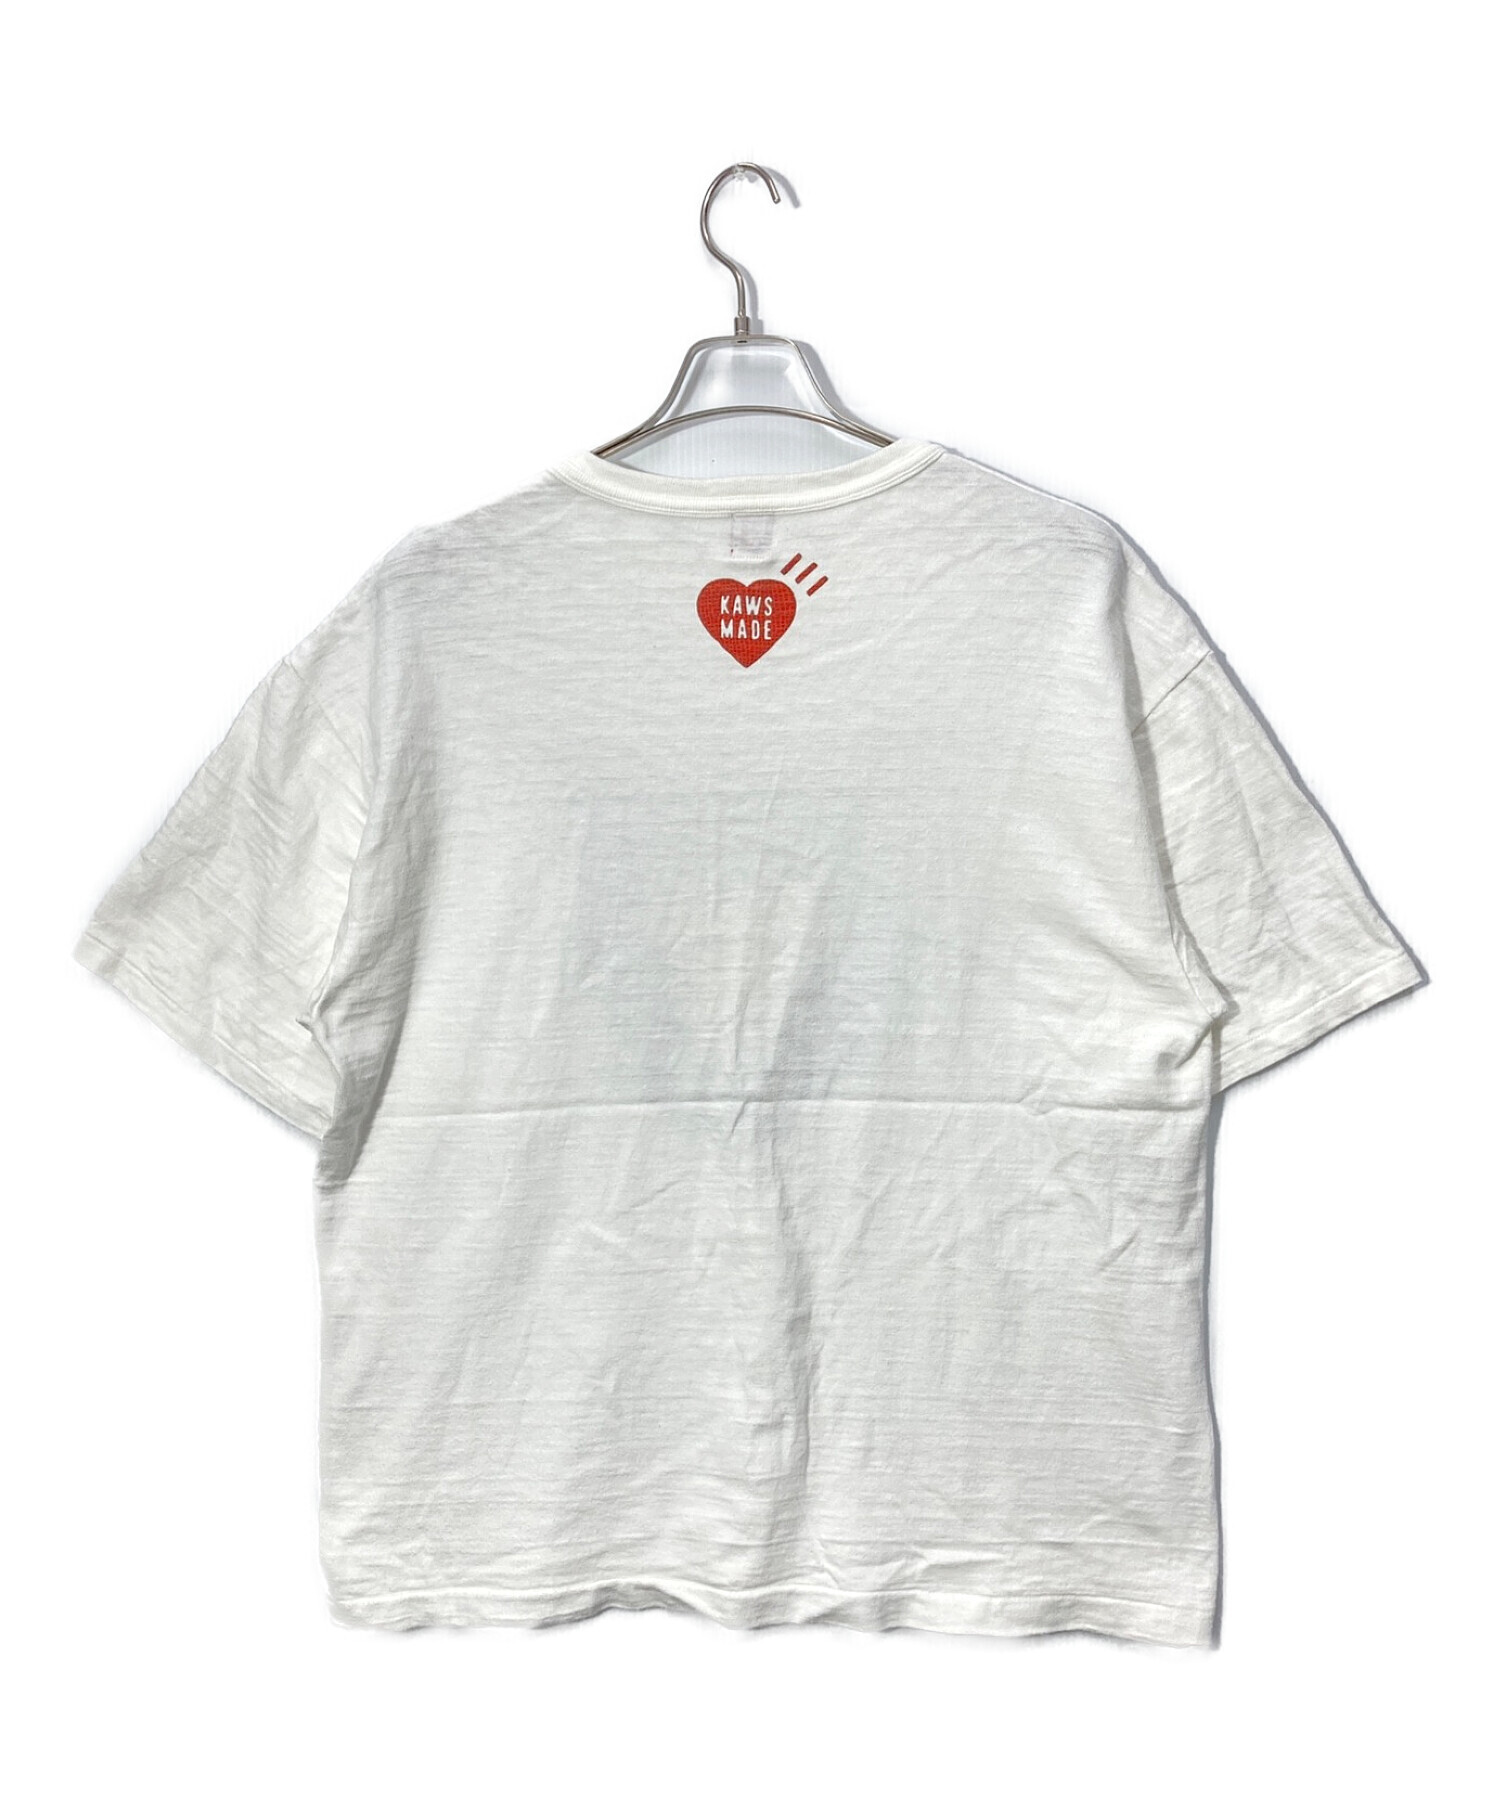 HUMAN MADE KAWS T-Shirt #5 "White" 2XL